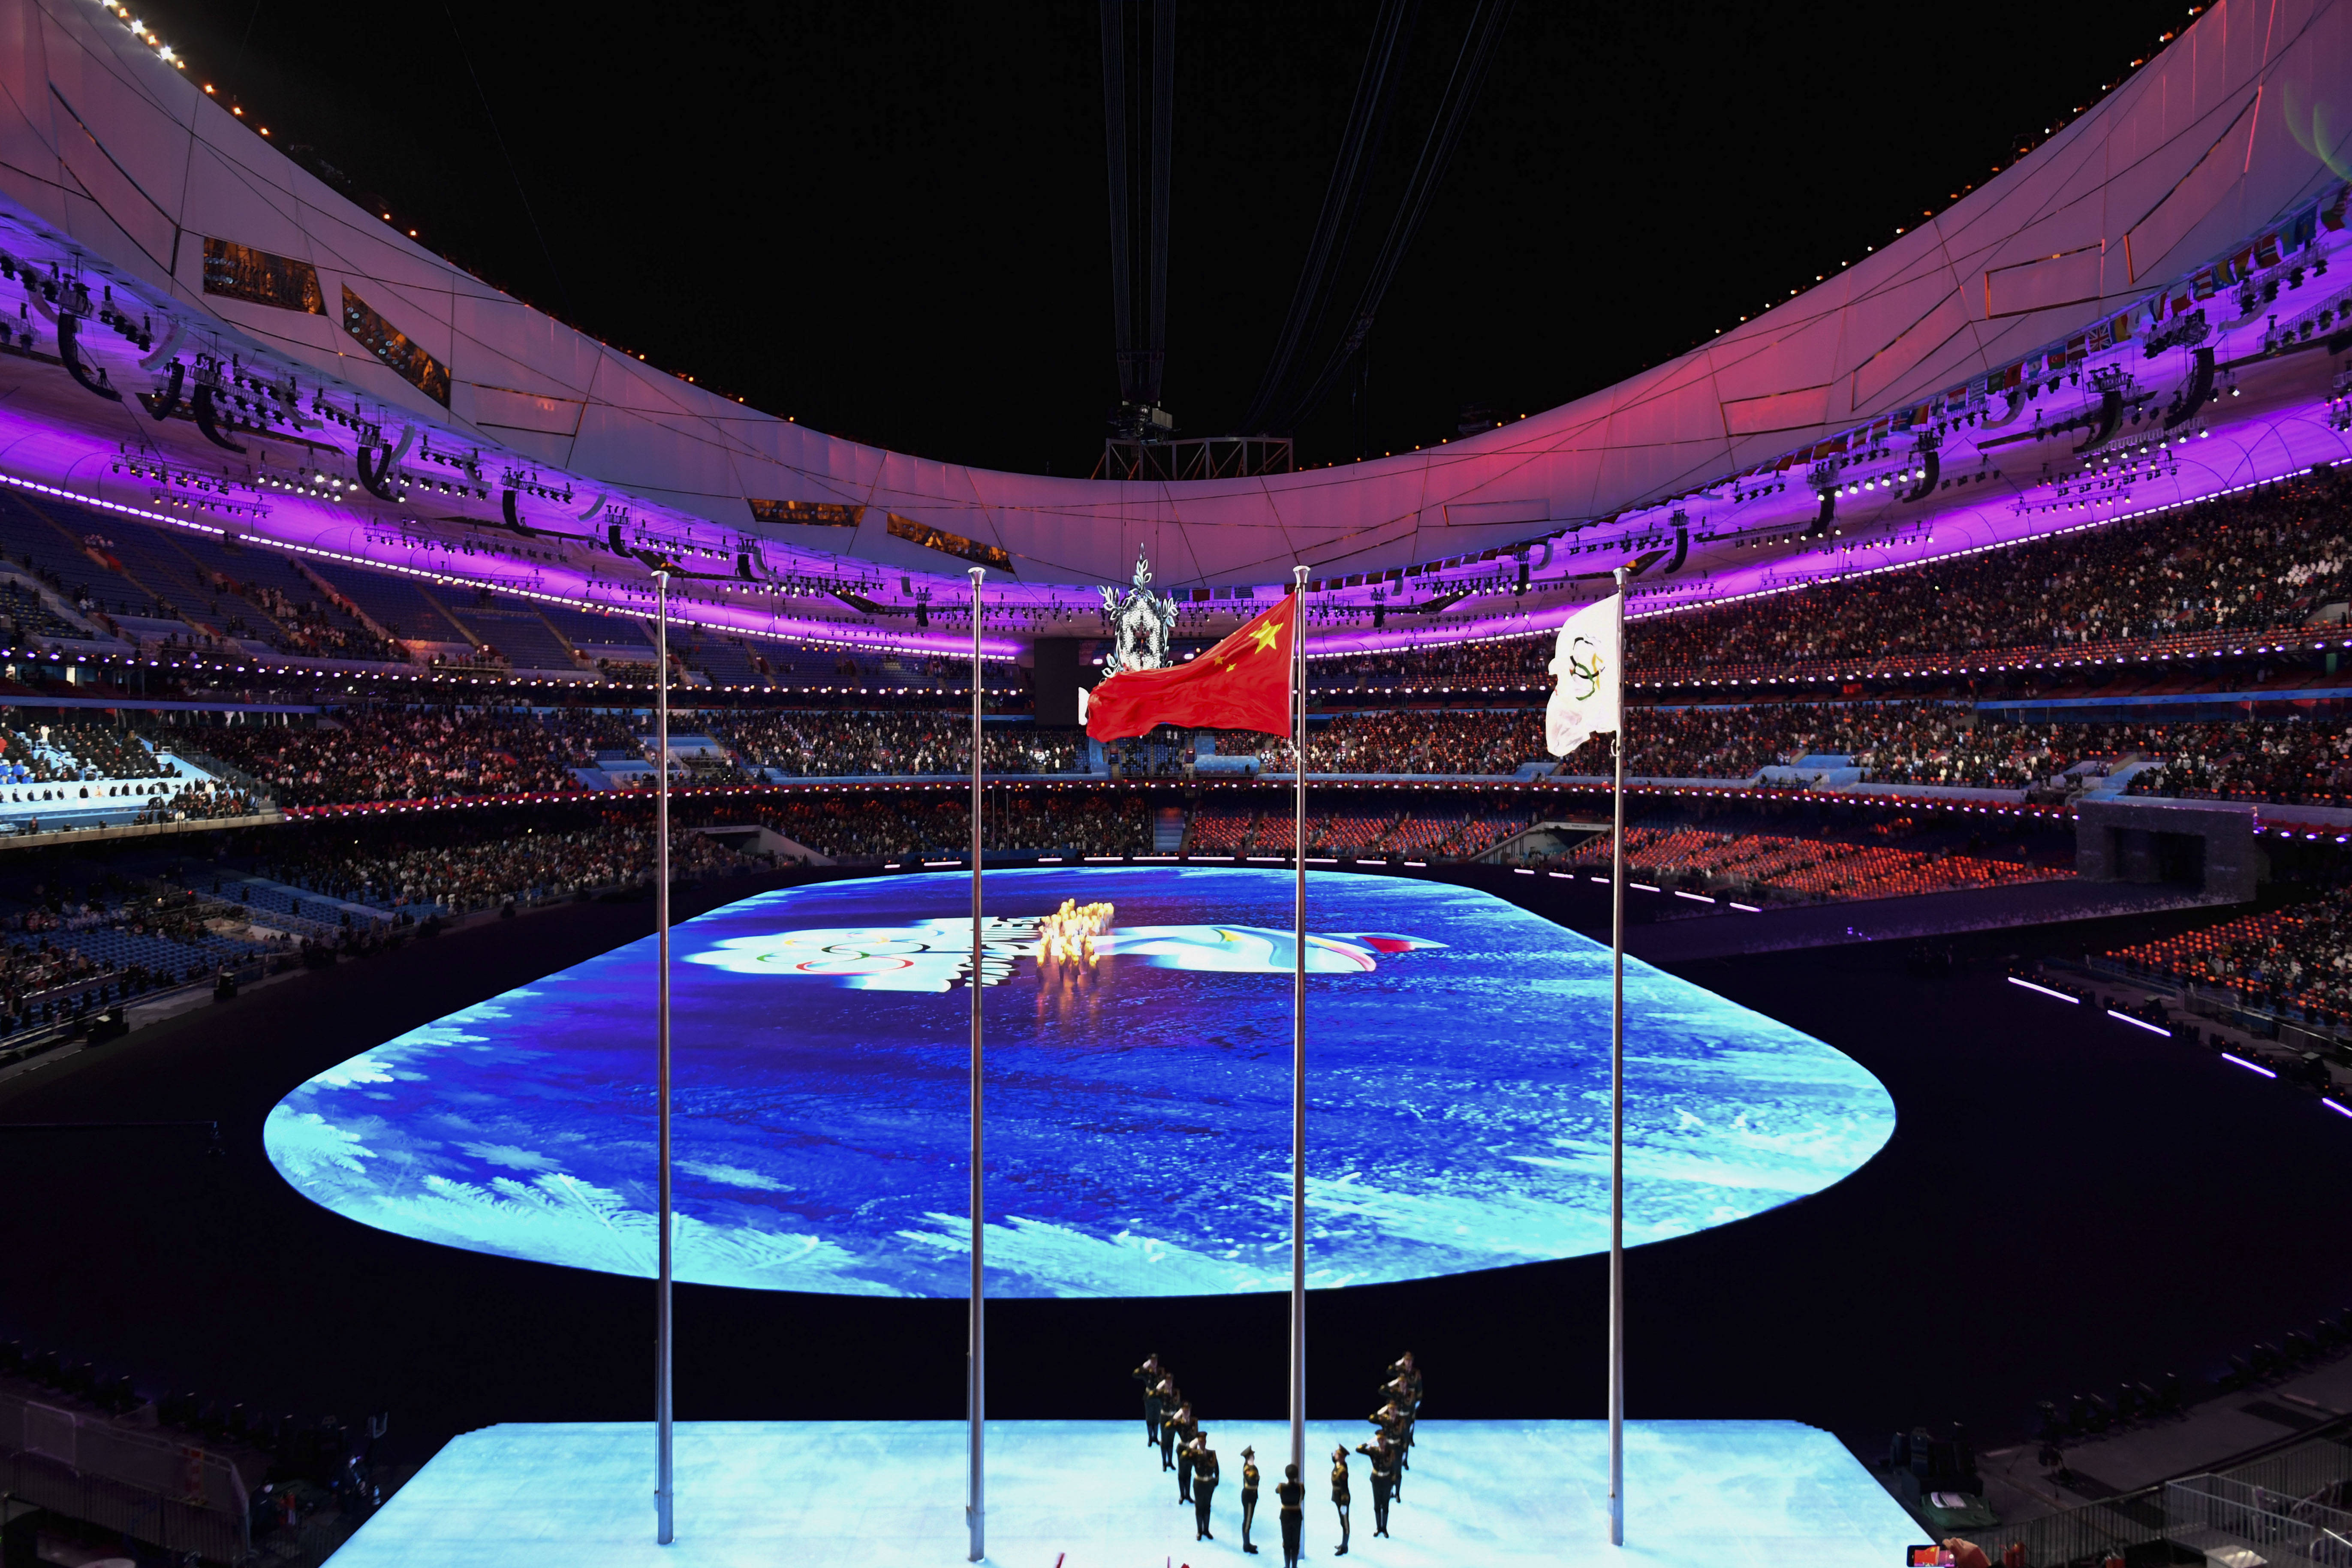 2022年北京冬奥会旗帜图片